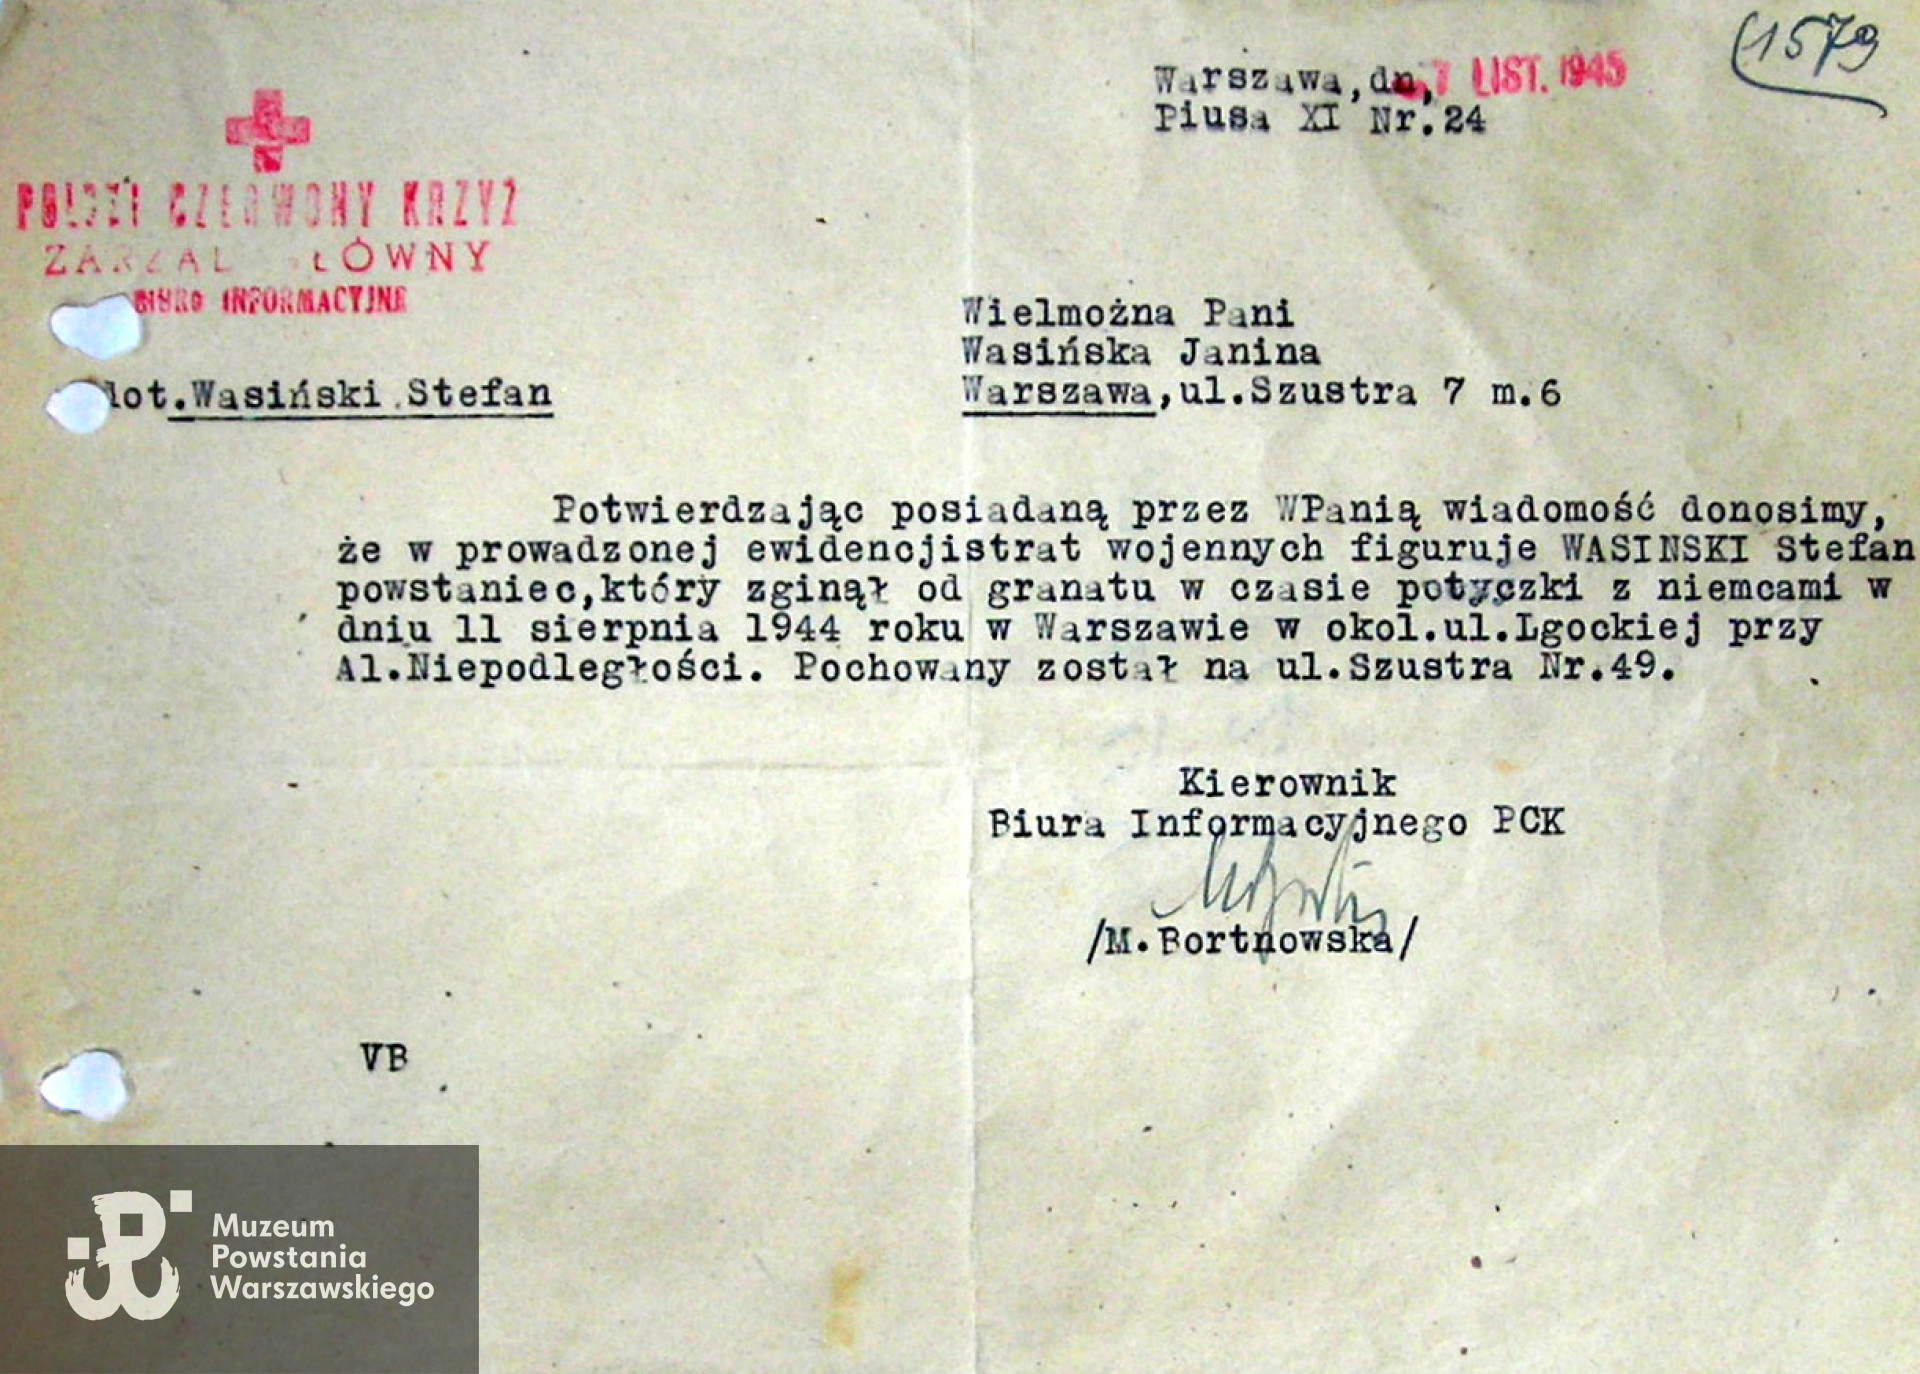 Pismo Biura Informacyjnego PCK z listopada 1945 roku do Janiny Wasińskiej.